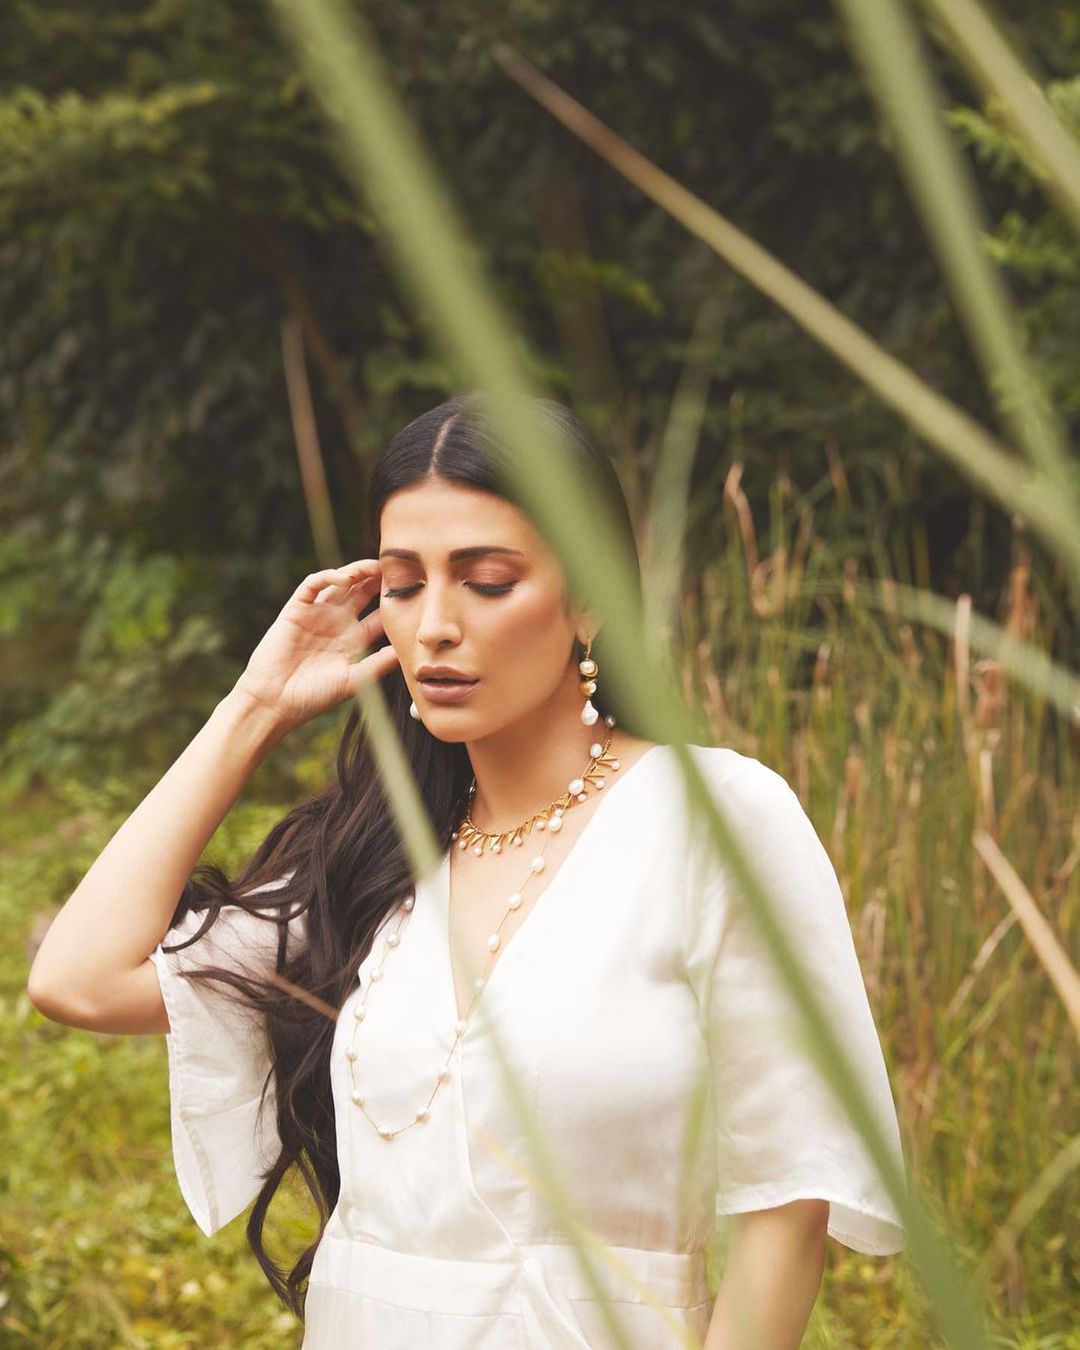  நடிகை ஸ்ருதி ஹாசன் ( Image : Instagram @shrutzhaasan)